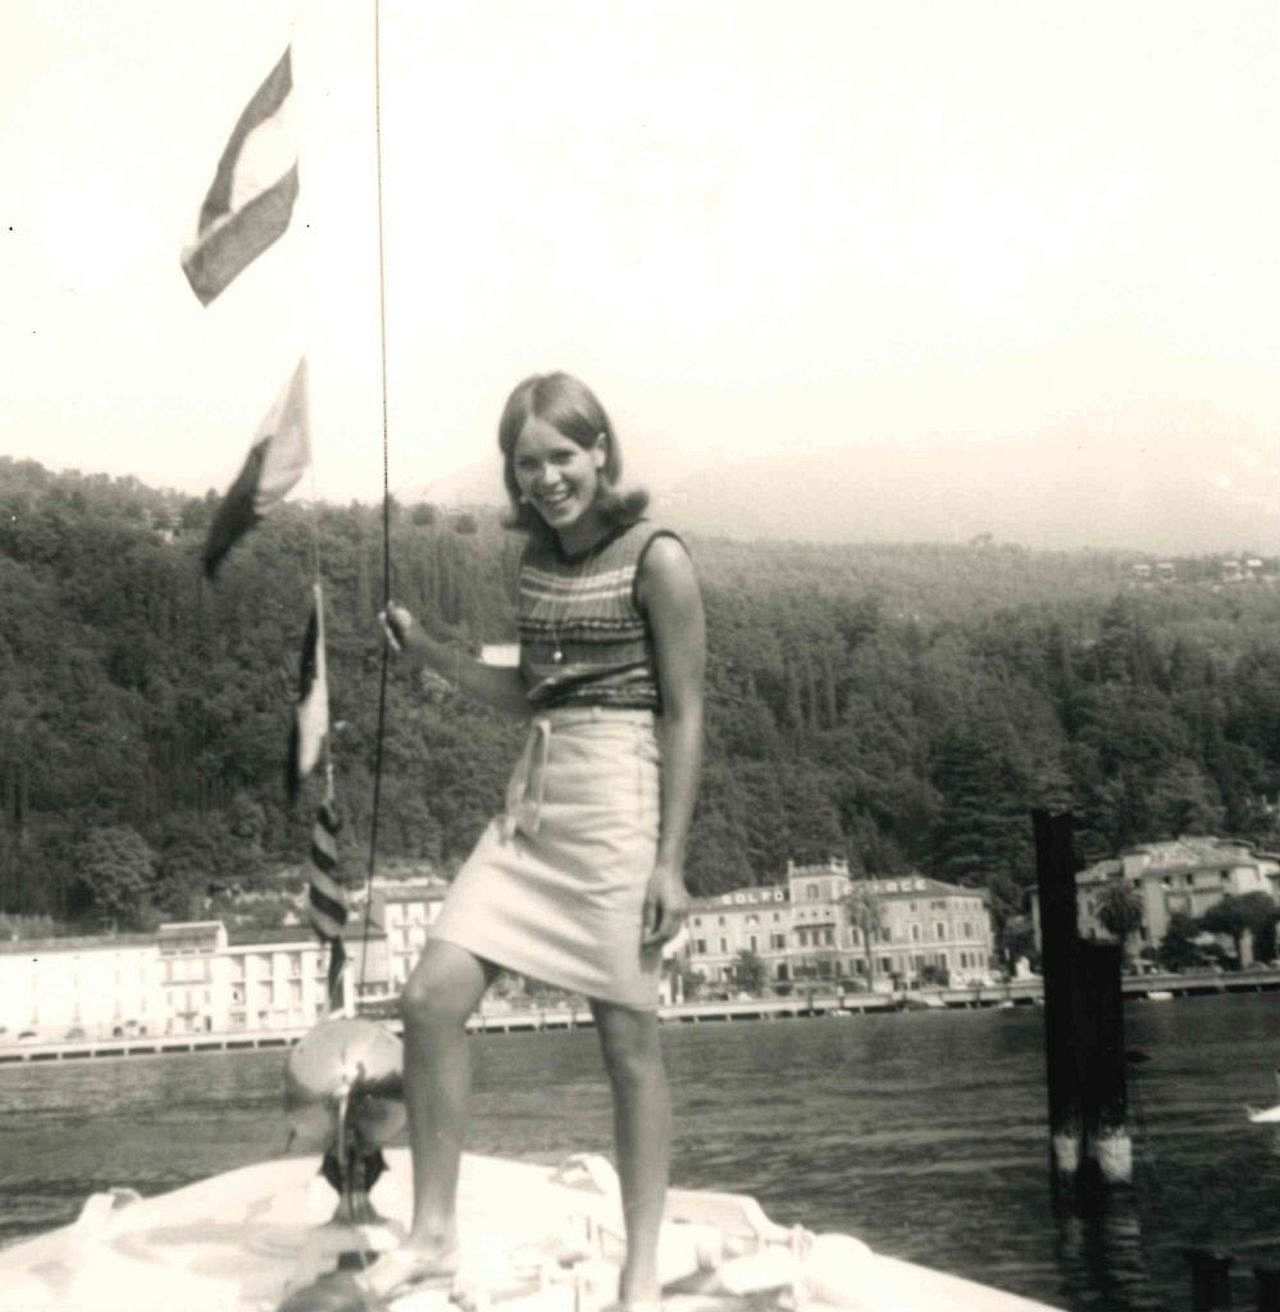 Foto, schwarz-weiß. Eine junge Frau steht am Bug eines Schiffes und lächelt in die Kamera. Sie trägt einen Rock und ein ärmelloses Oberteil. Sie hat schulterlange Haare und hält sich an einem Seil fest. Im Hintergrund sieht man Gebäude vor einem bewaldeten Hang.